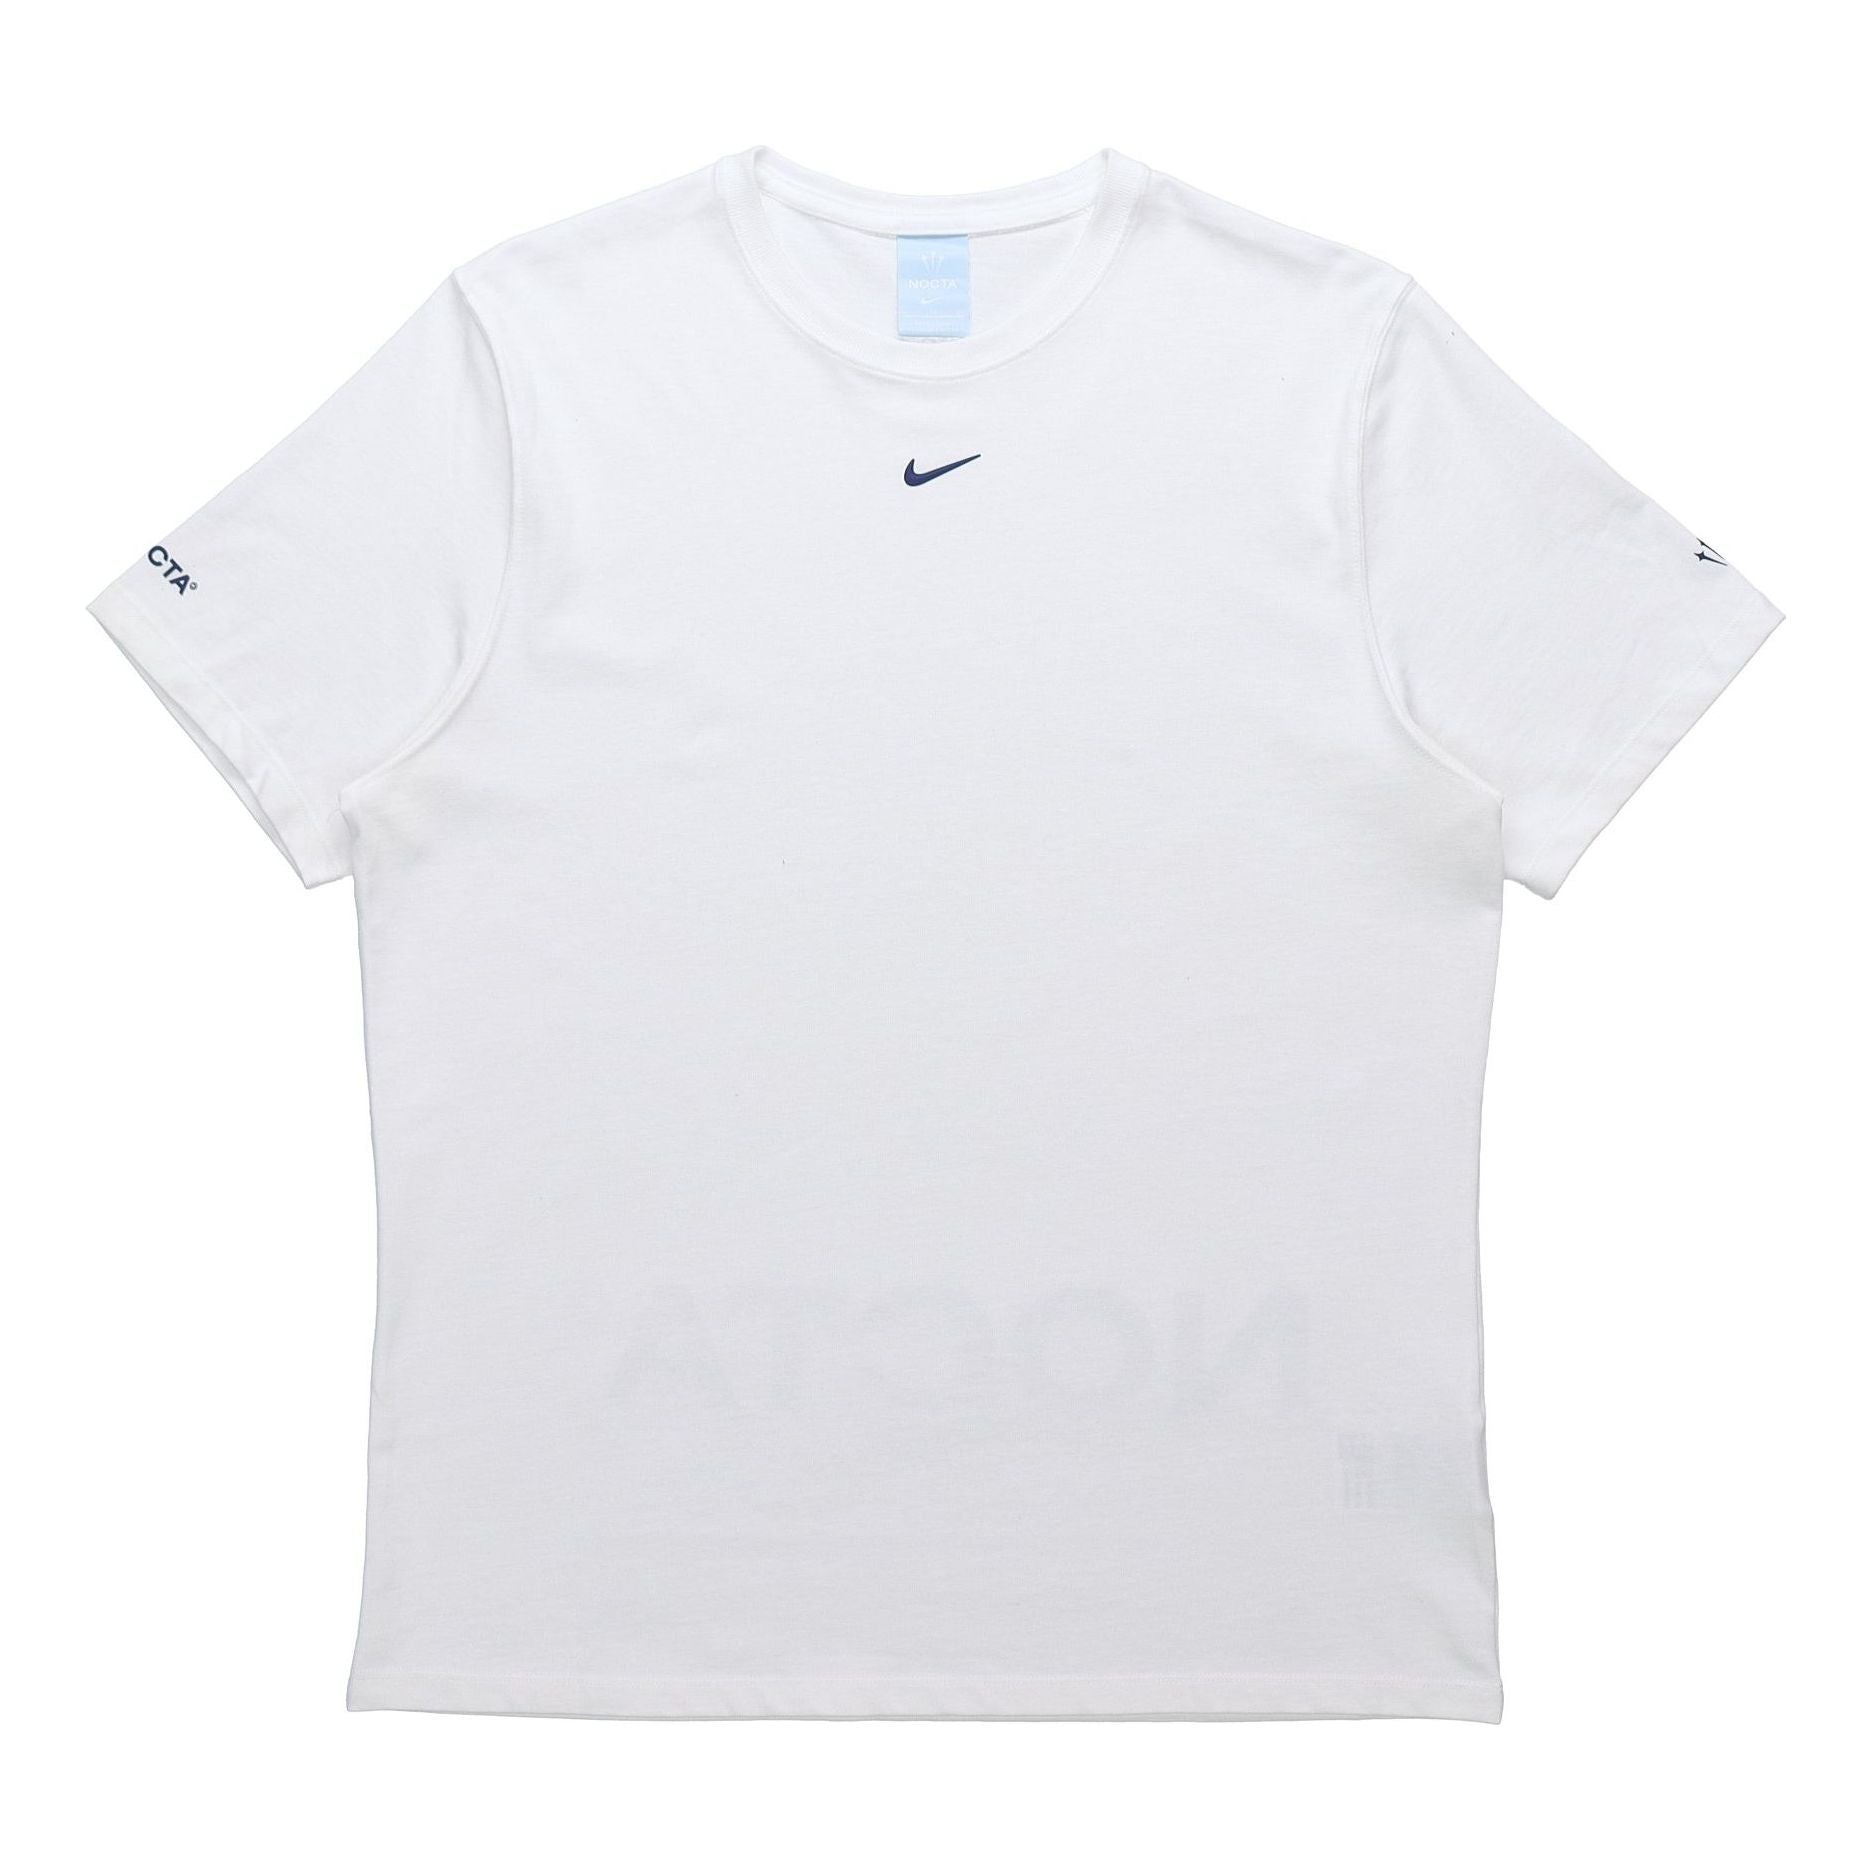 Nike x Drake NOCTA Cardinal Stock Logo Tee White DJ5949-100 - 1